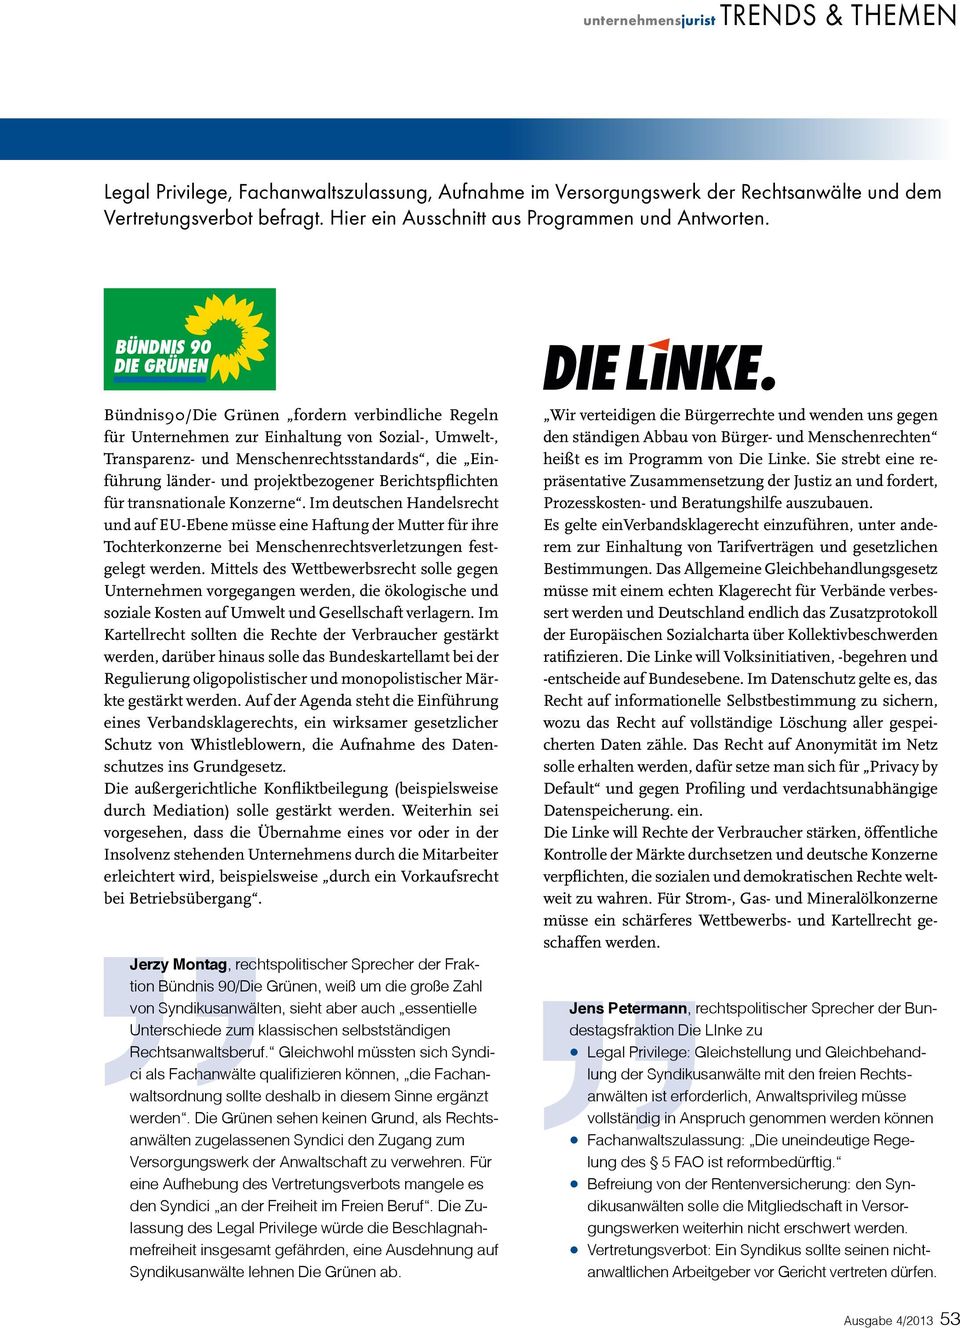 Bündnis90/Die Grünen fordern verbindliche Regeln für Unternehmen zur Einhaltung von Sozial-, Umwelt-, Transparenz- und Menschenrechtsstandards, die Einführung länder- und projektbezogener